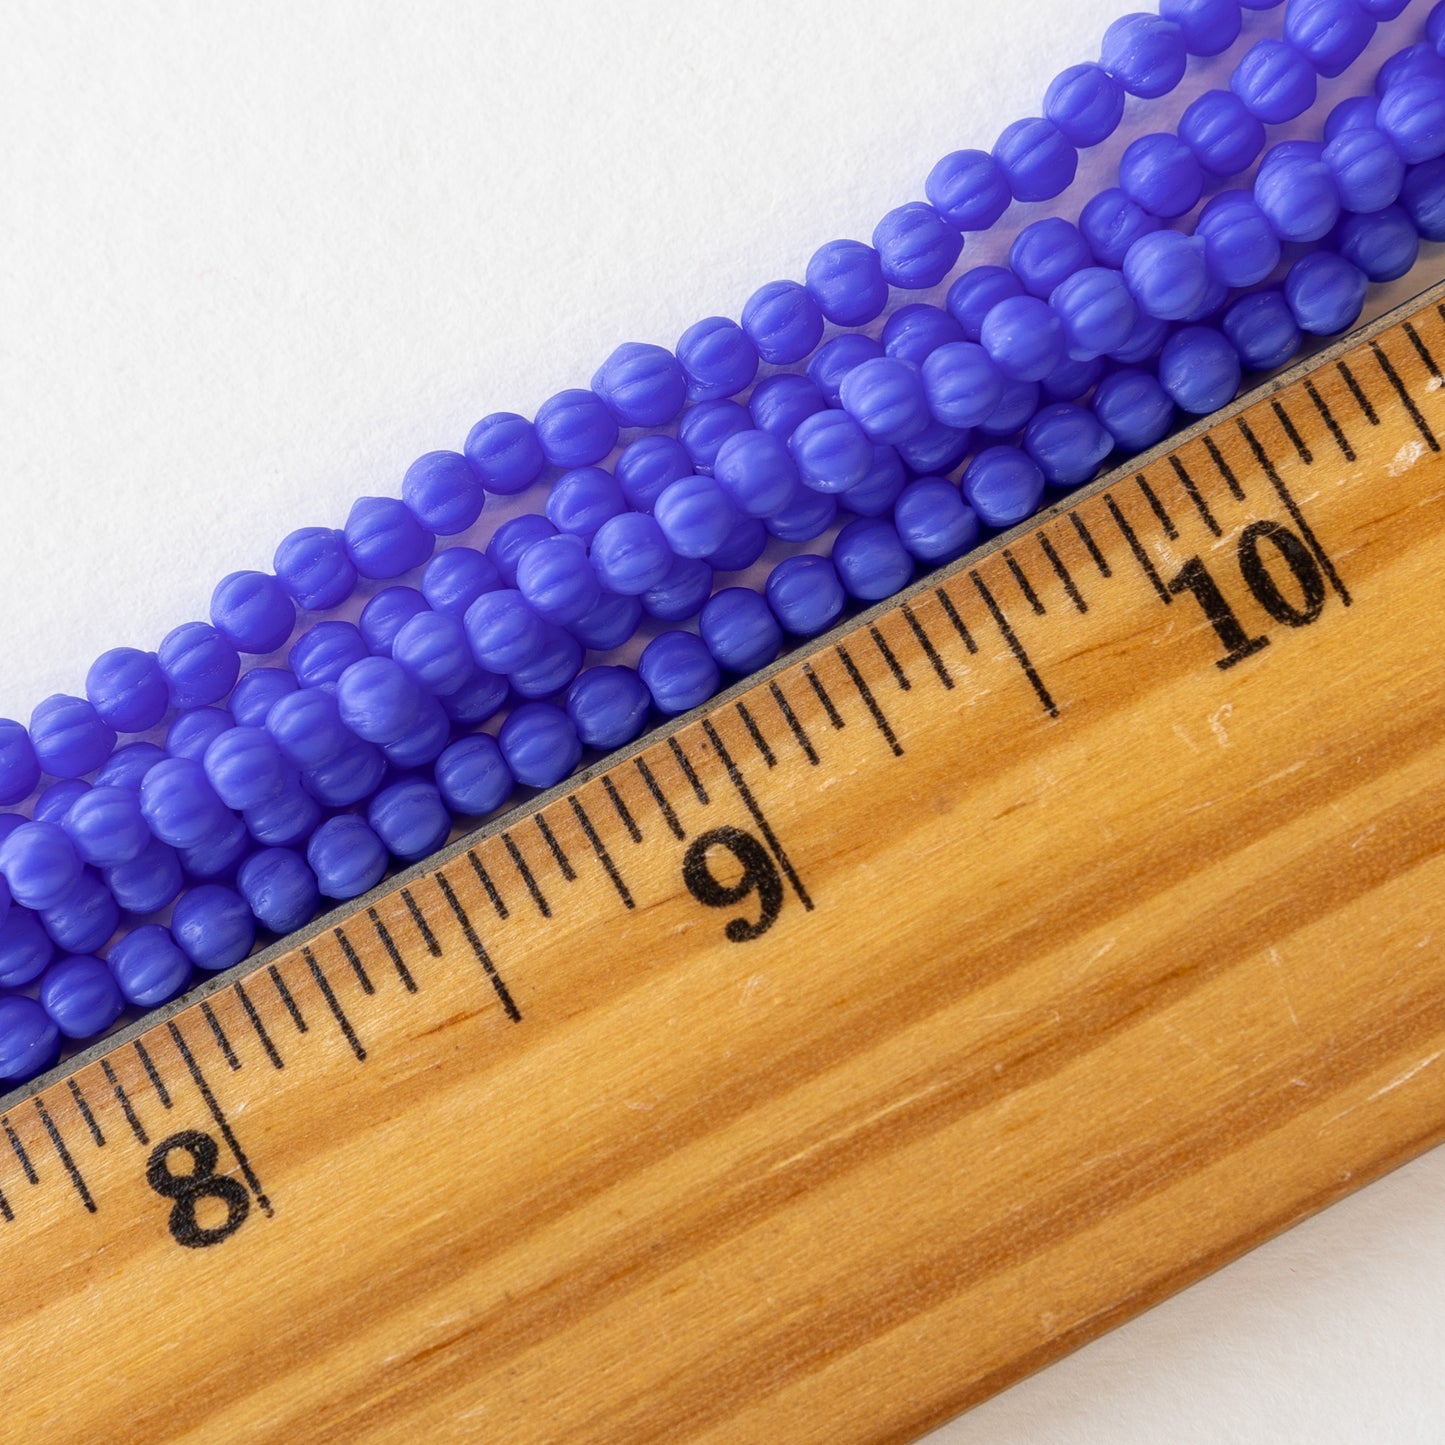 3mm Melon Beads - Opaque Matte Azure Blue - 58 beads